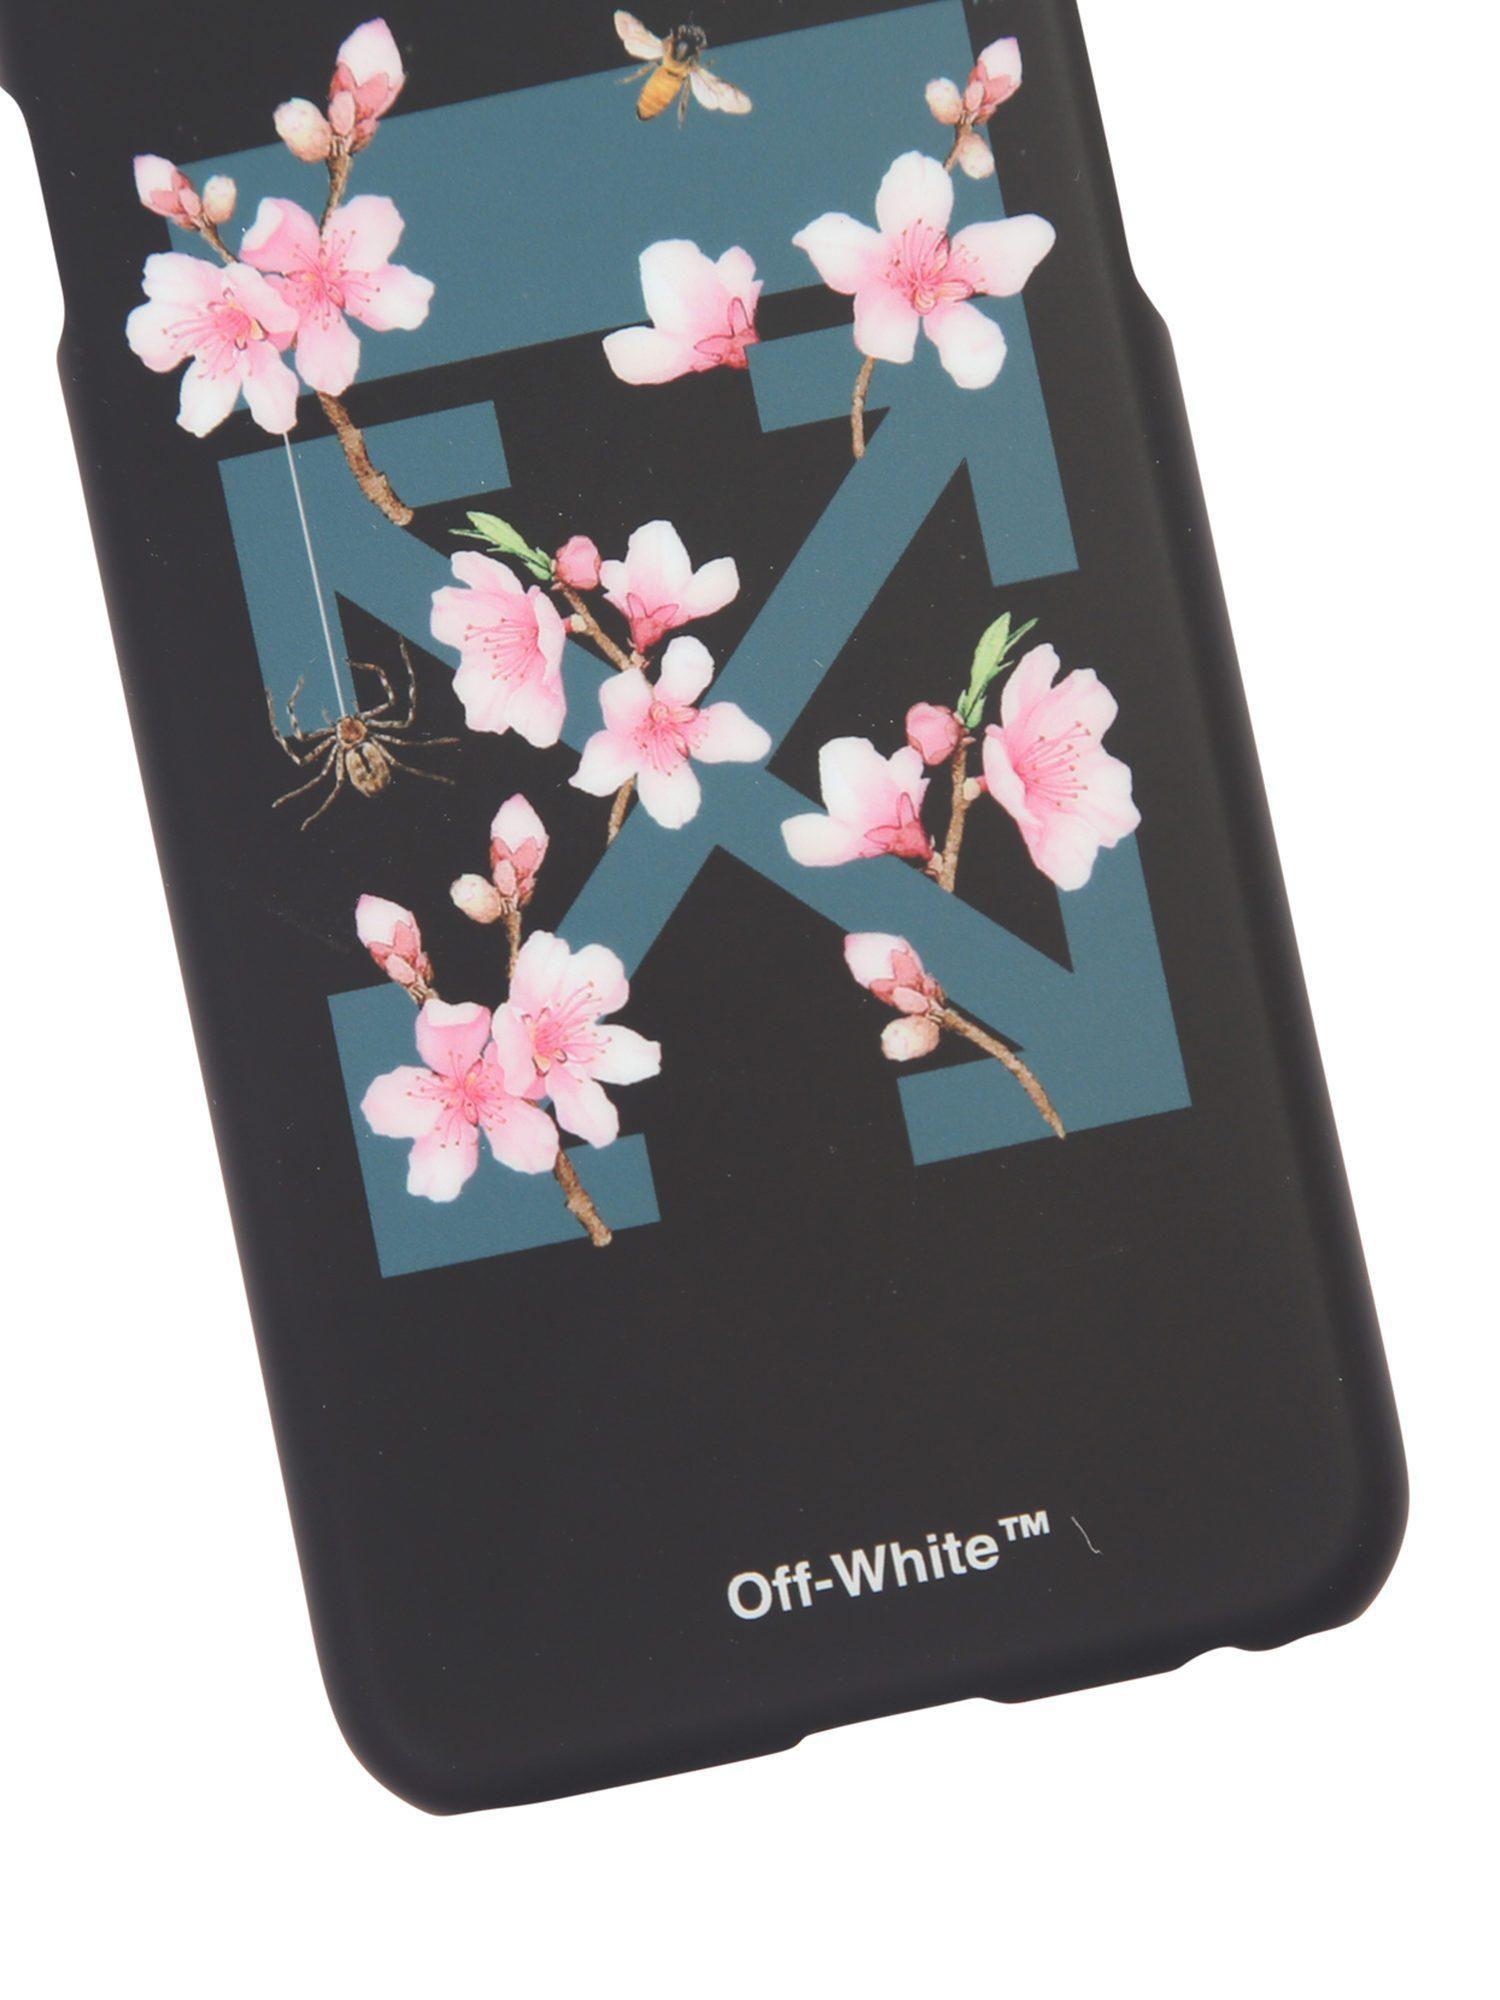 Flower Off White Virgil Logo - Lyst - Off-White c/o Virgil Abloh Cherry Blossom Printed Iphone 7 ...